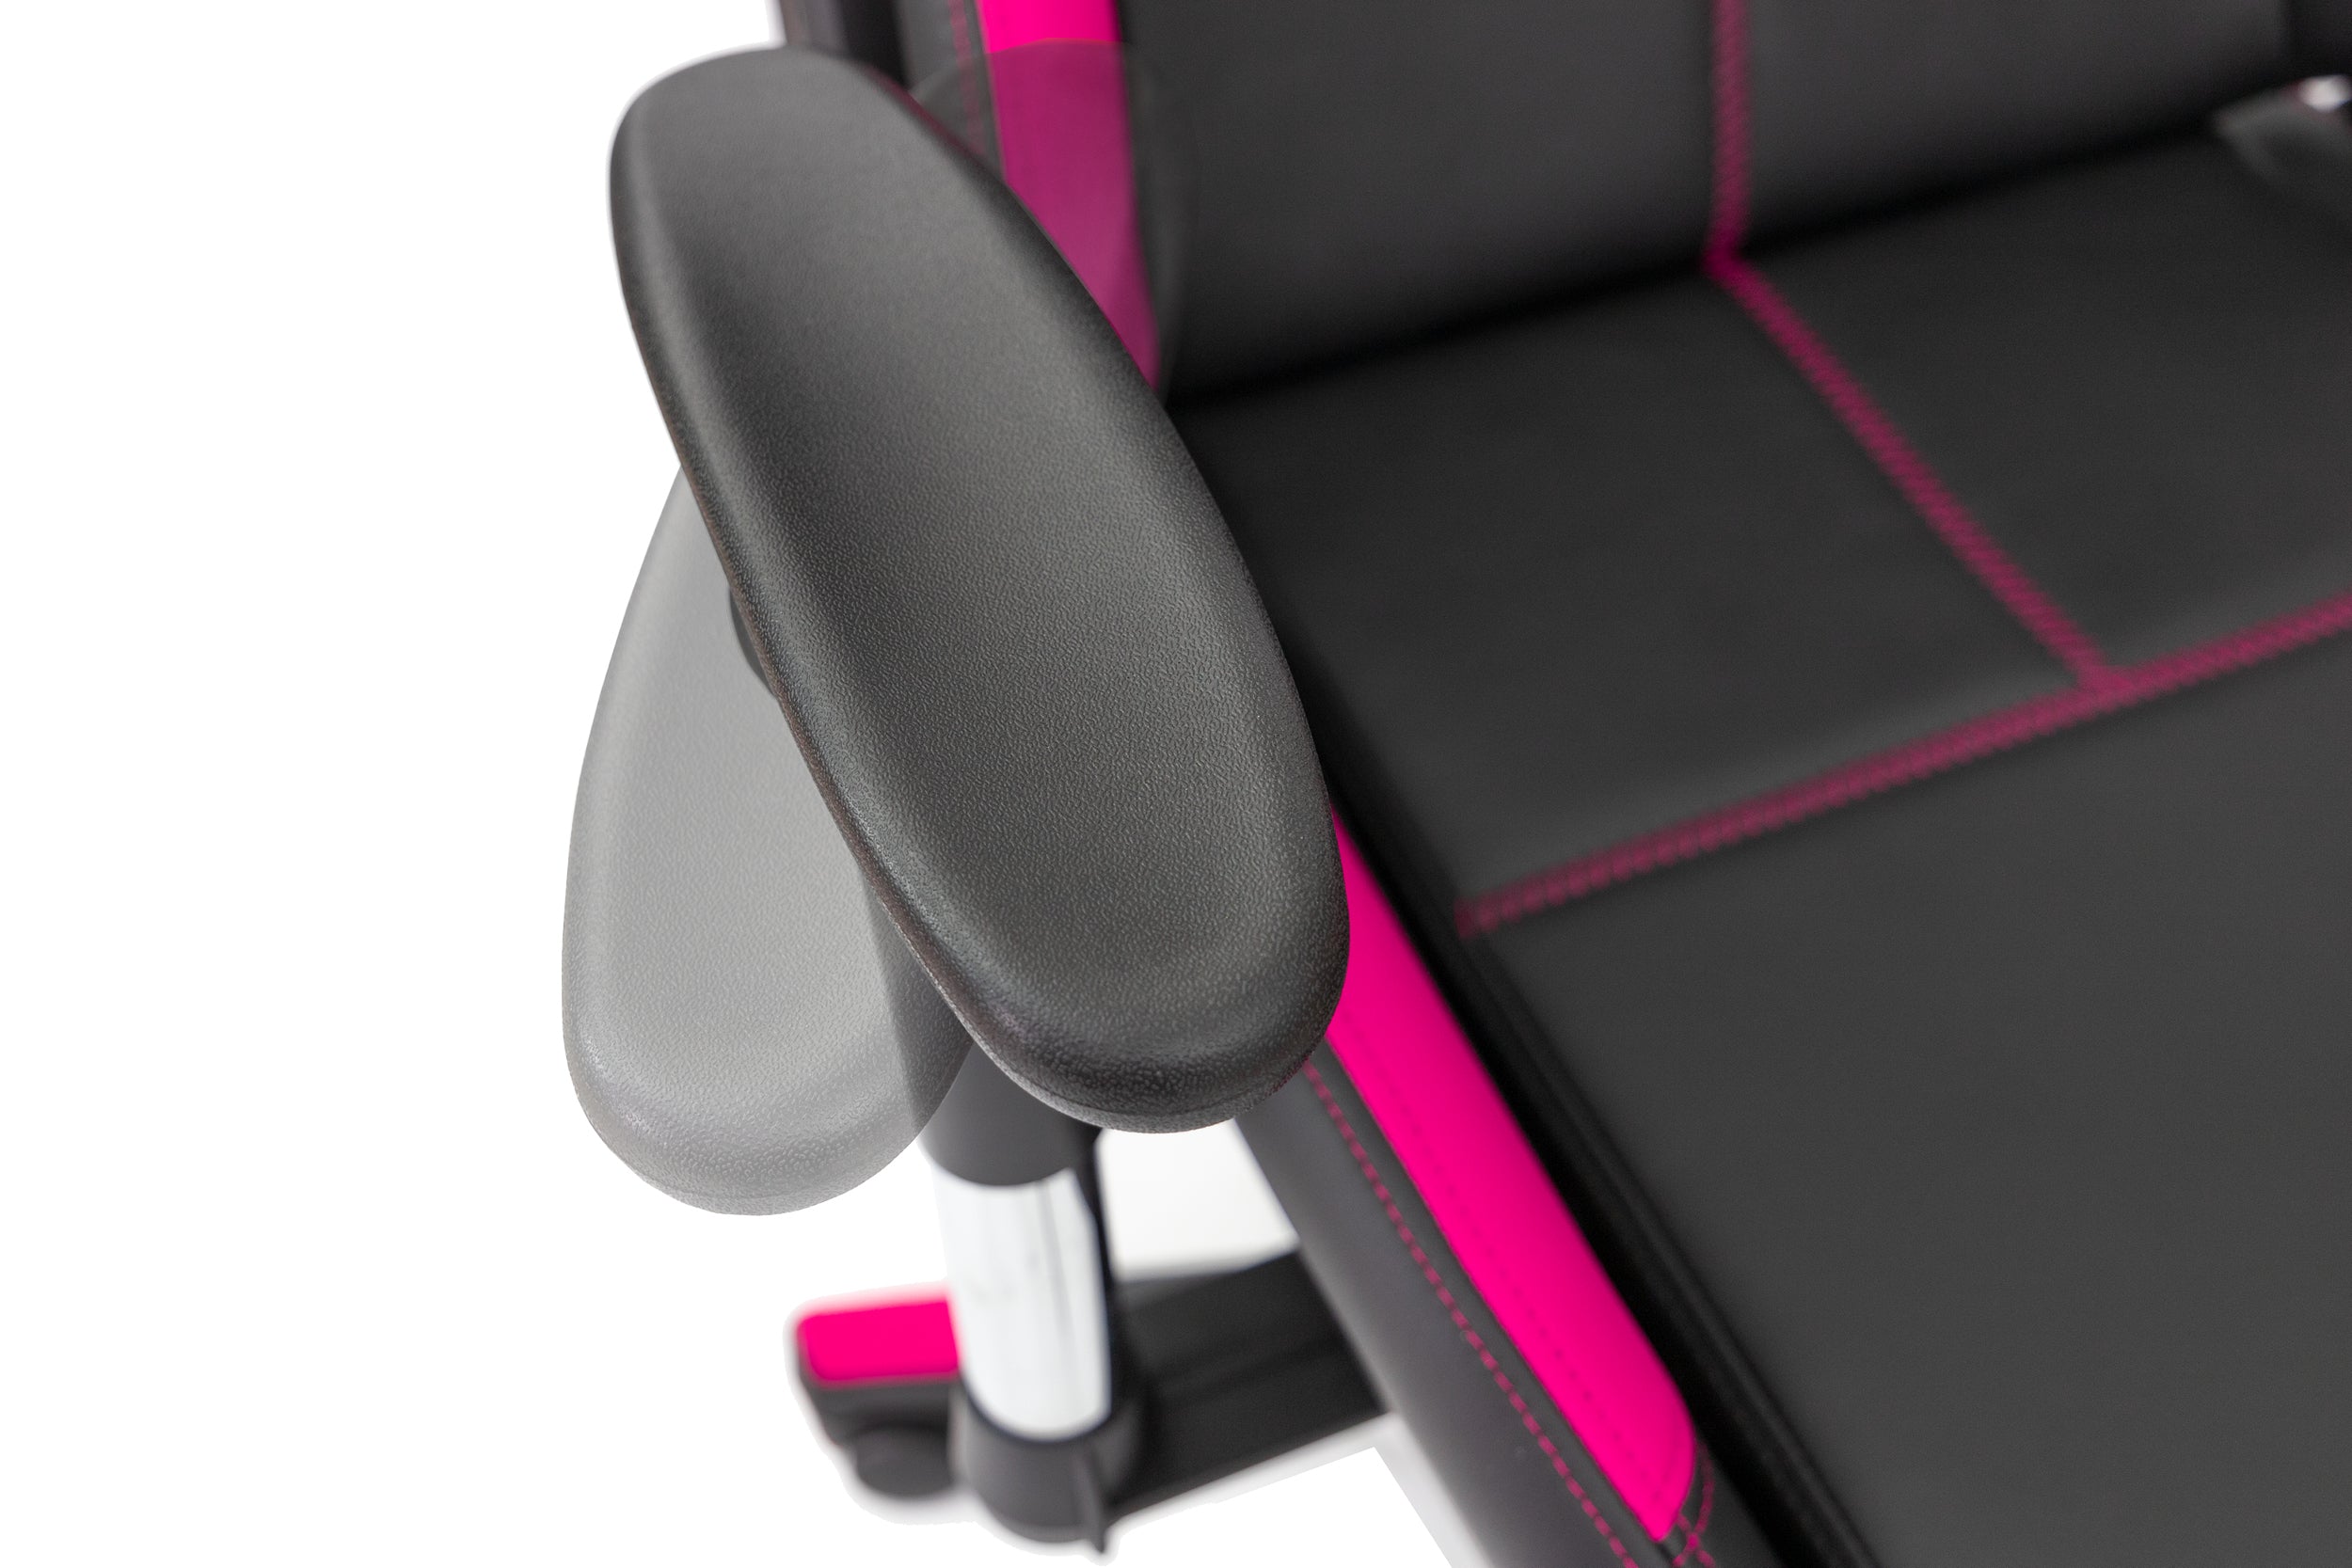 TPFLiving Premium XL-Gaming Stuhl Fire, belastbar bis 150kg Kunstleder